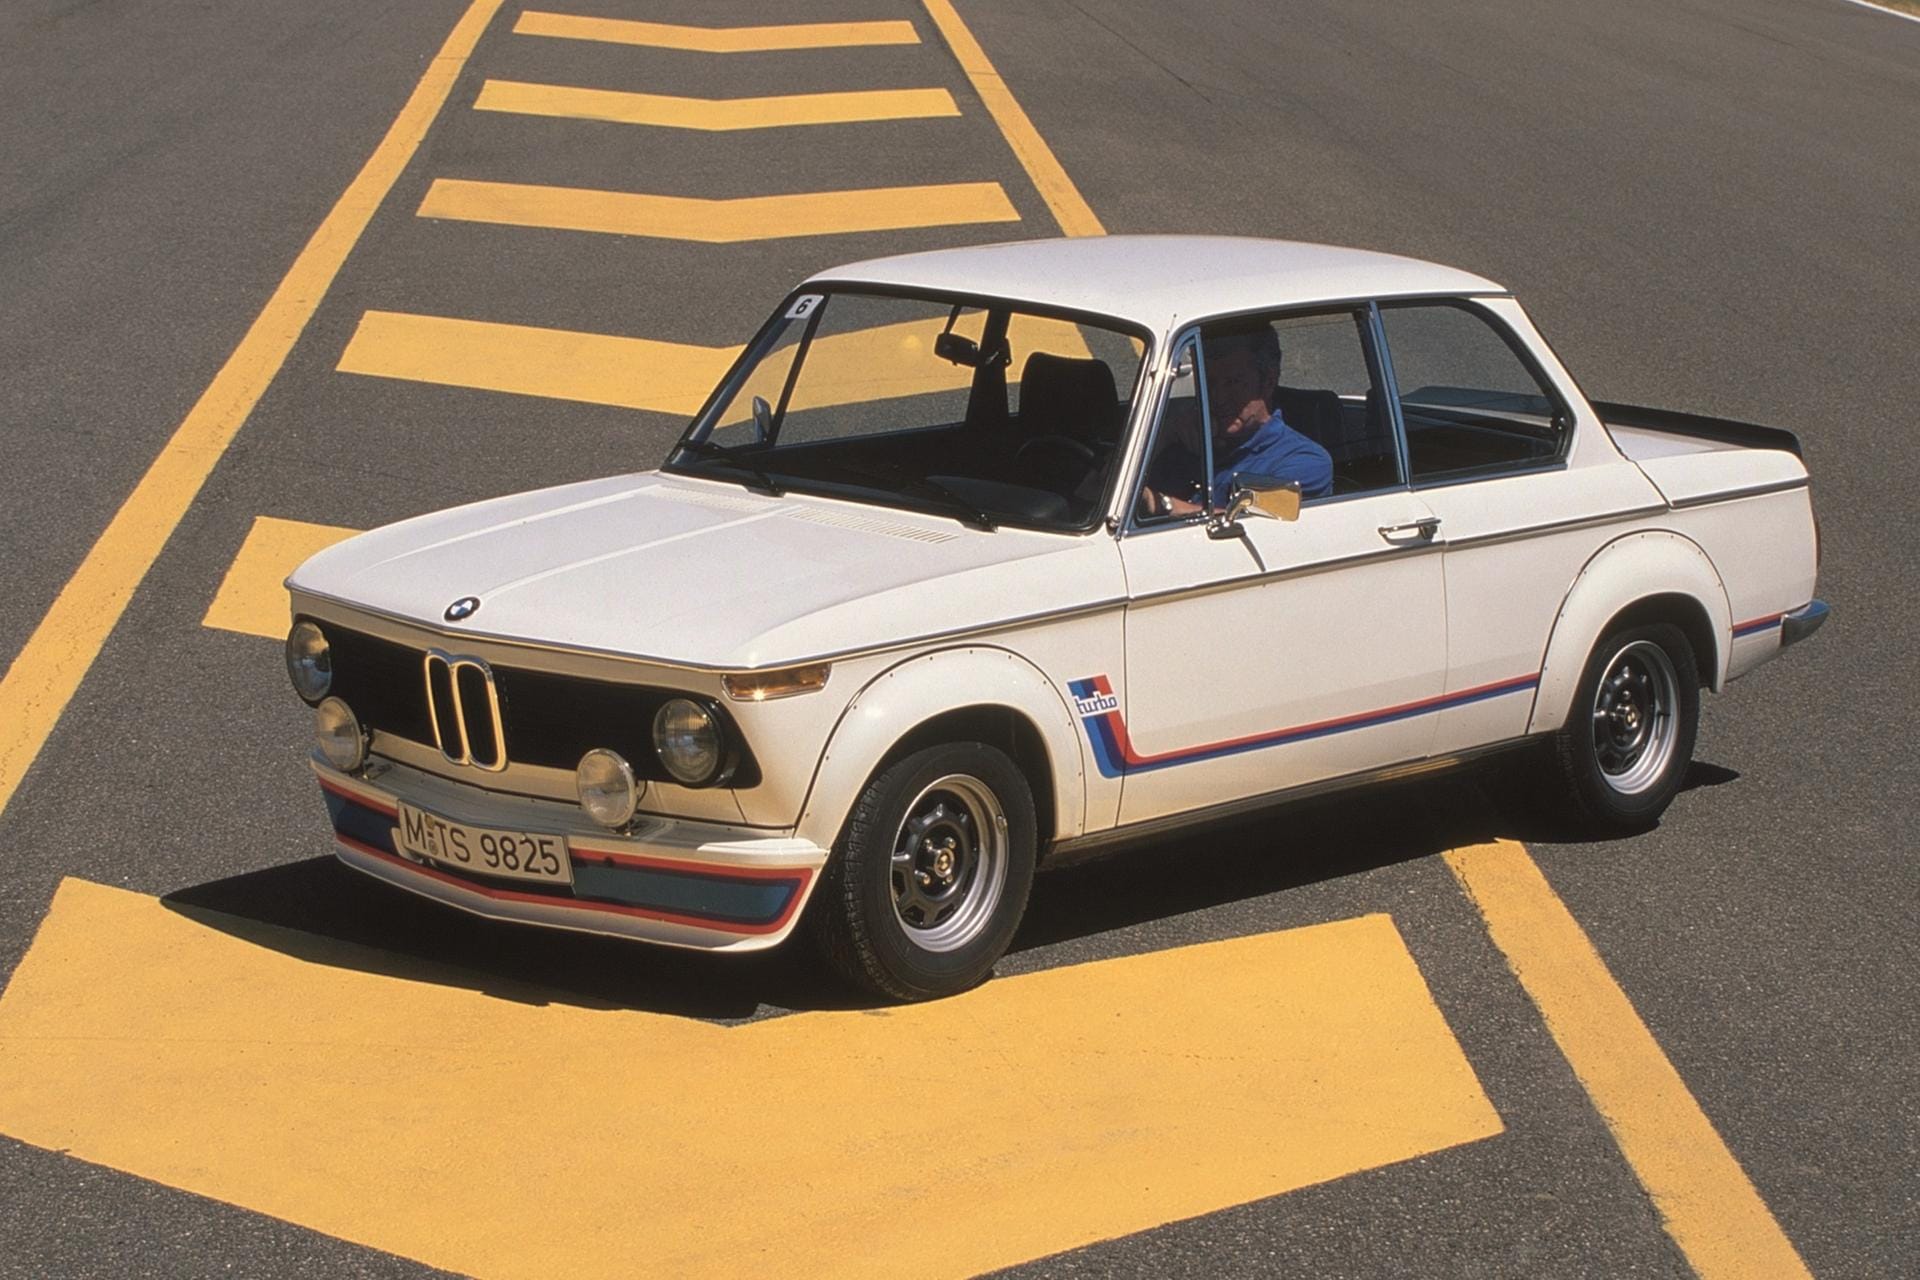 Die Baureihe wurde 1973 vom BMW 2002 turbo gekrönt. Die erste europäische Serienlimousine mit Abgasturbolader kam auf 170 PS. Doch in Zeiten der Ölkrise war dem 20.000 Mark teuren Bolden kein Erfolg beschienen. Nach nur zehn Monaten Bauzeit wurde er eingestellt.